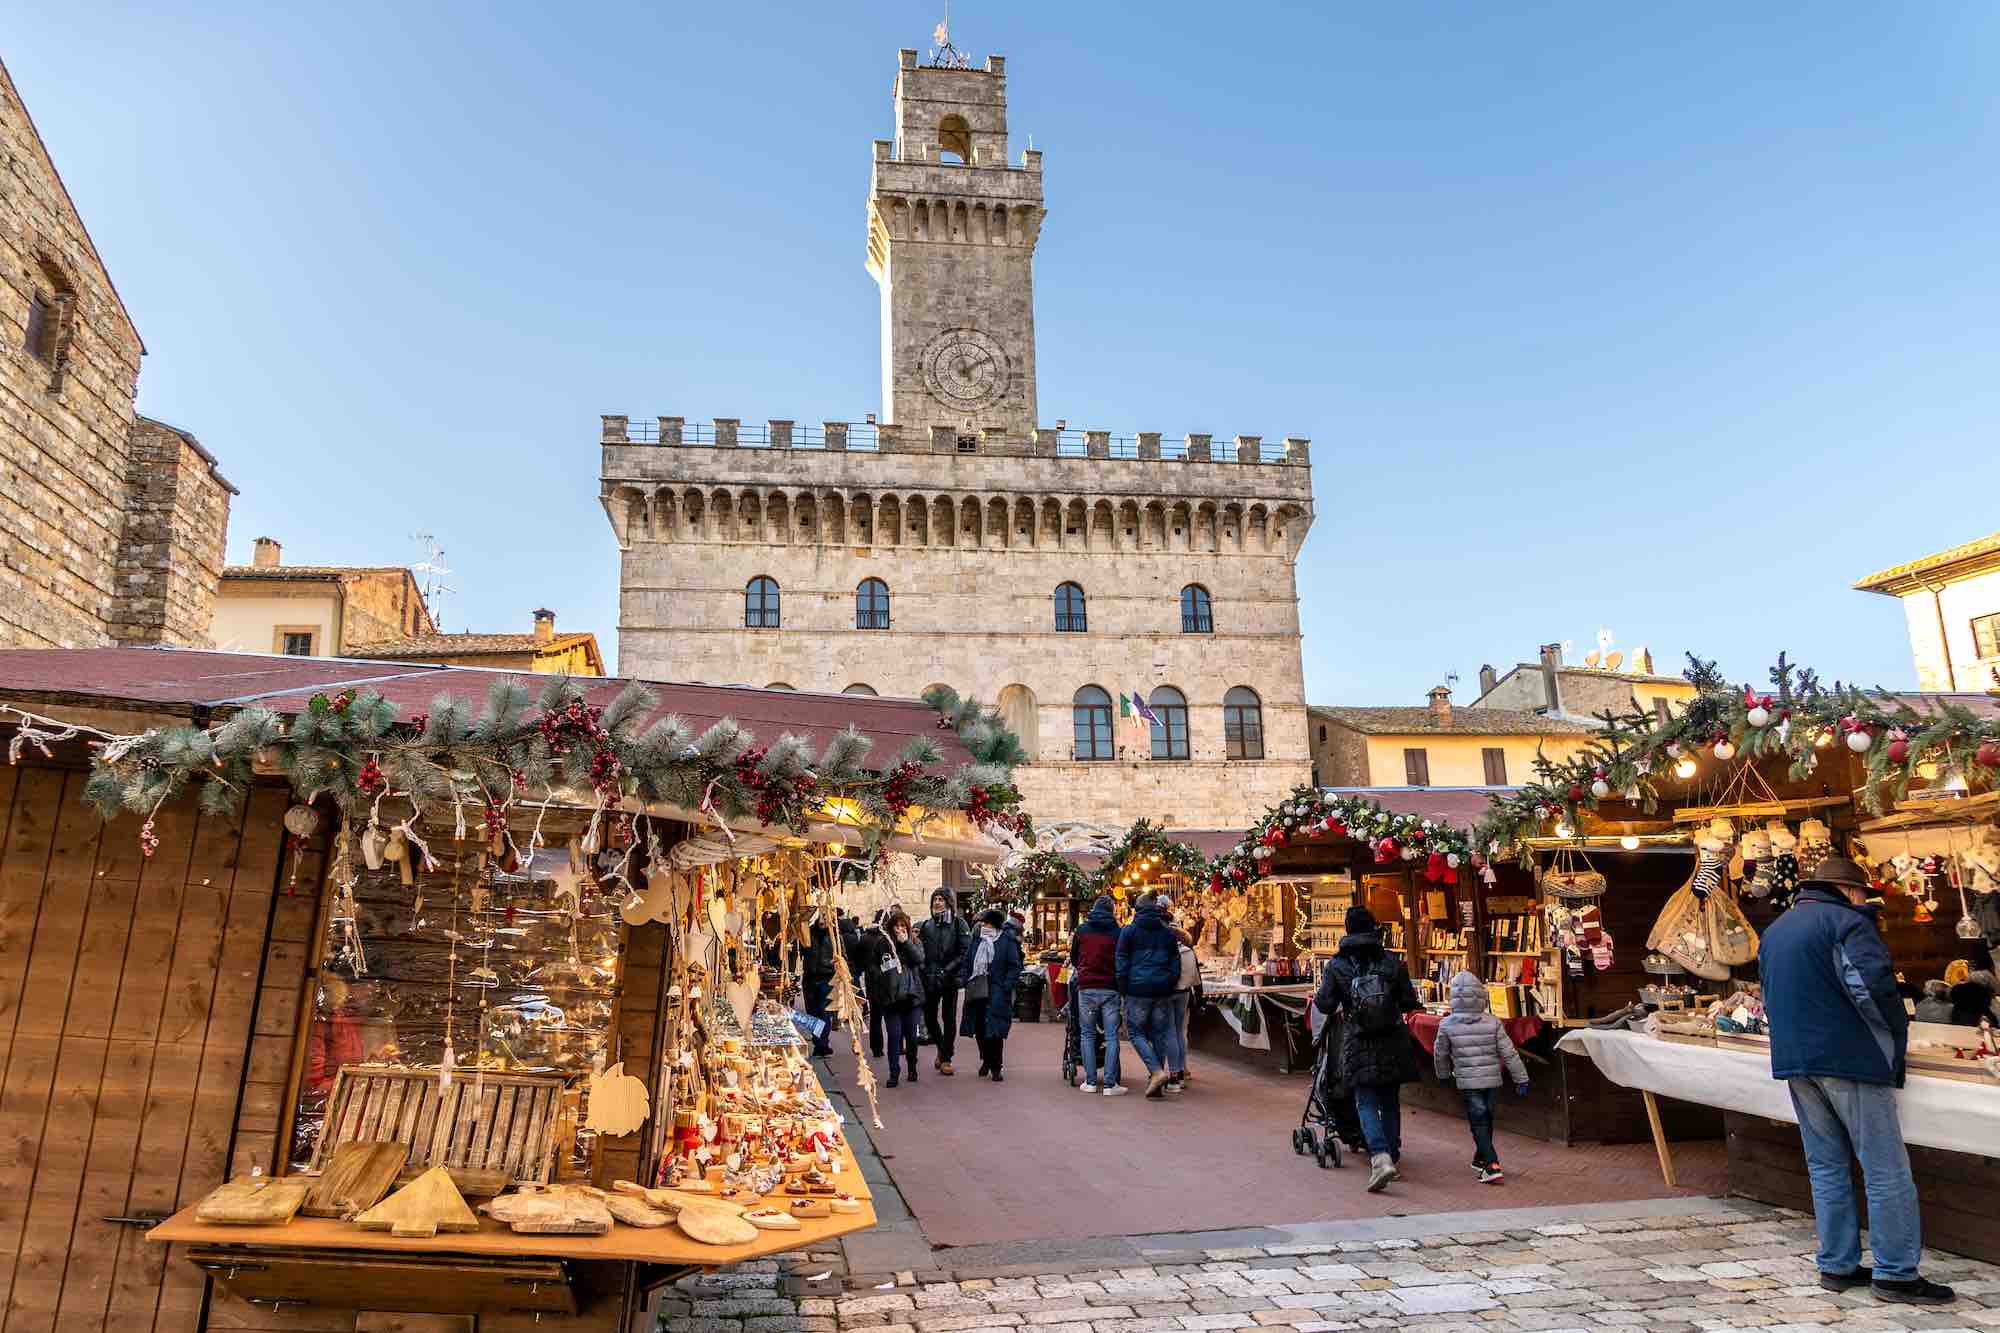 Mercatino di Natale a Montepulciano, uno dei più belli della Toscana